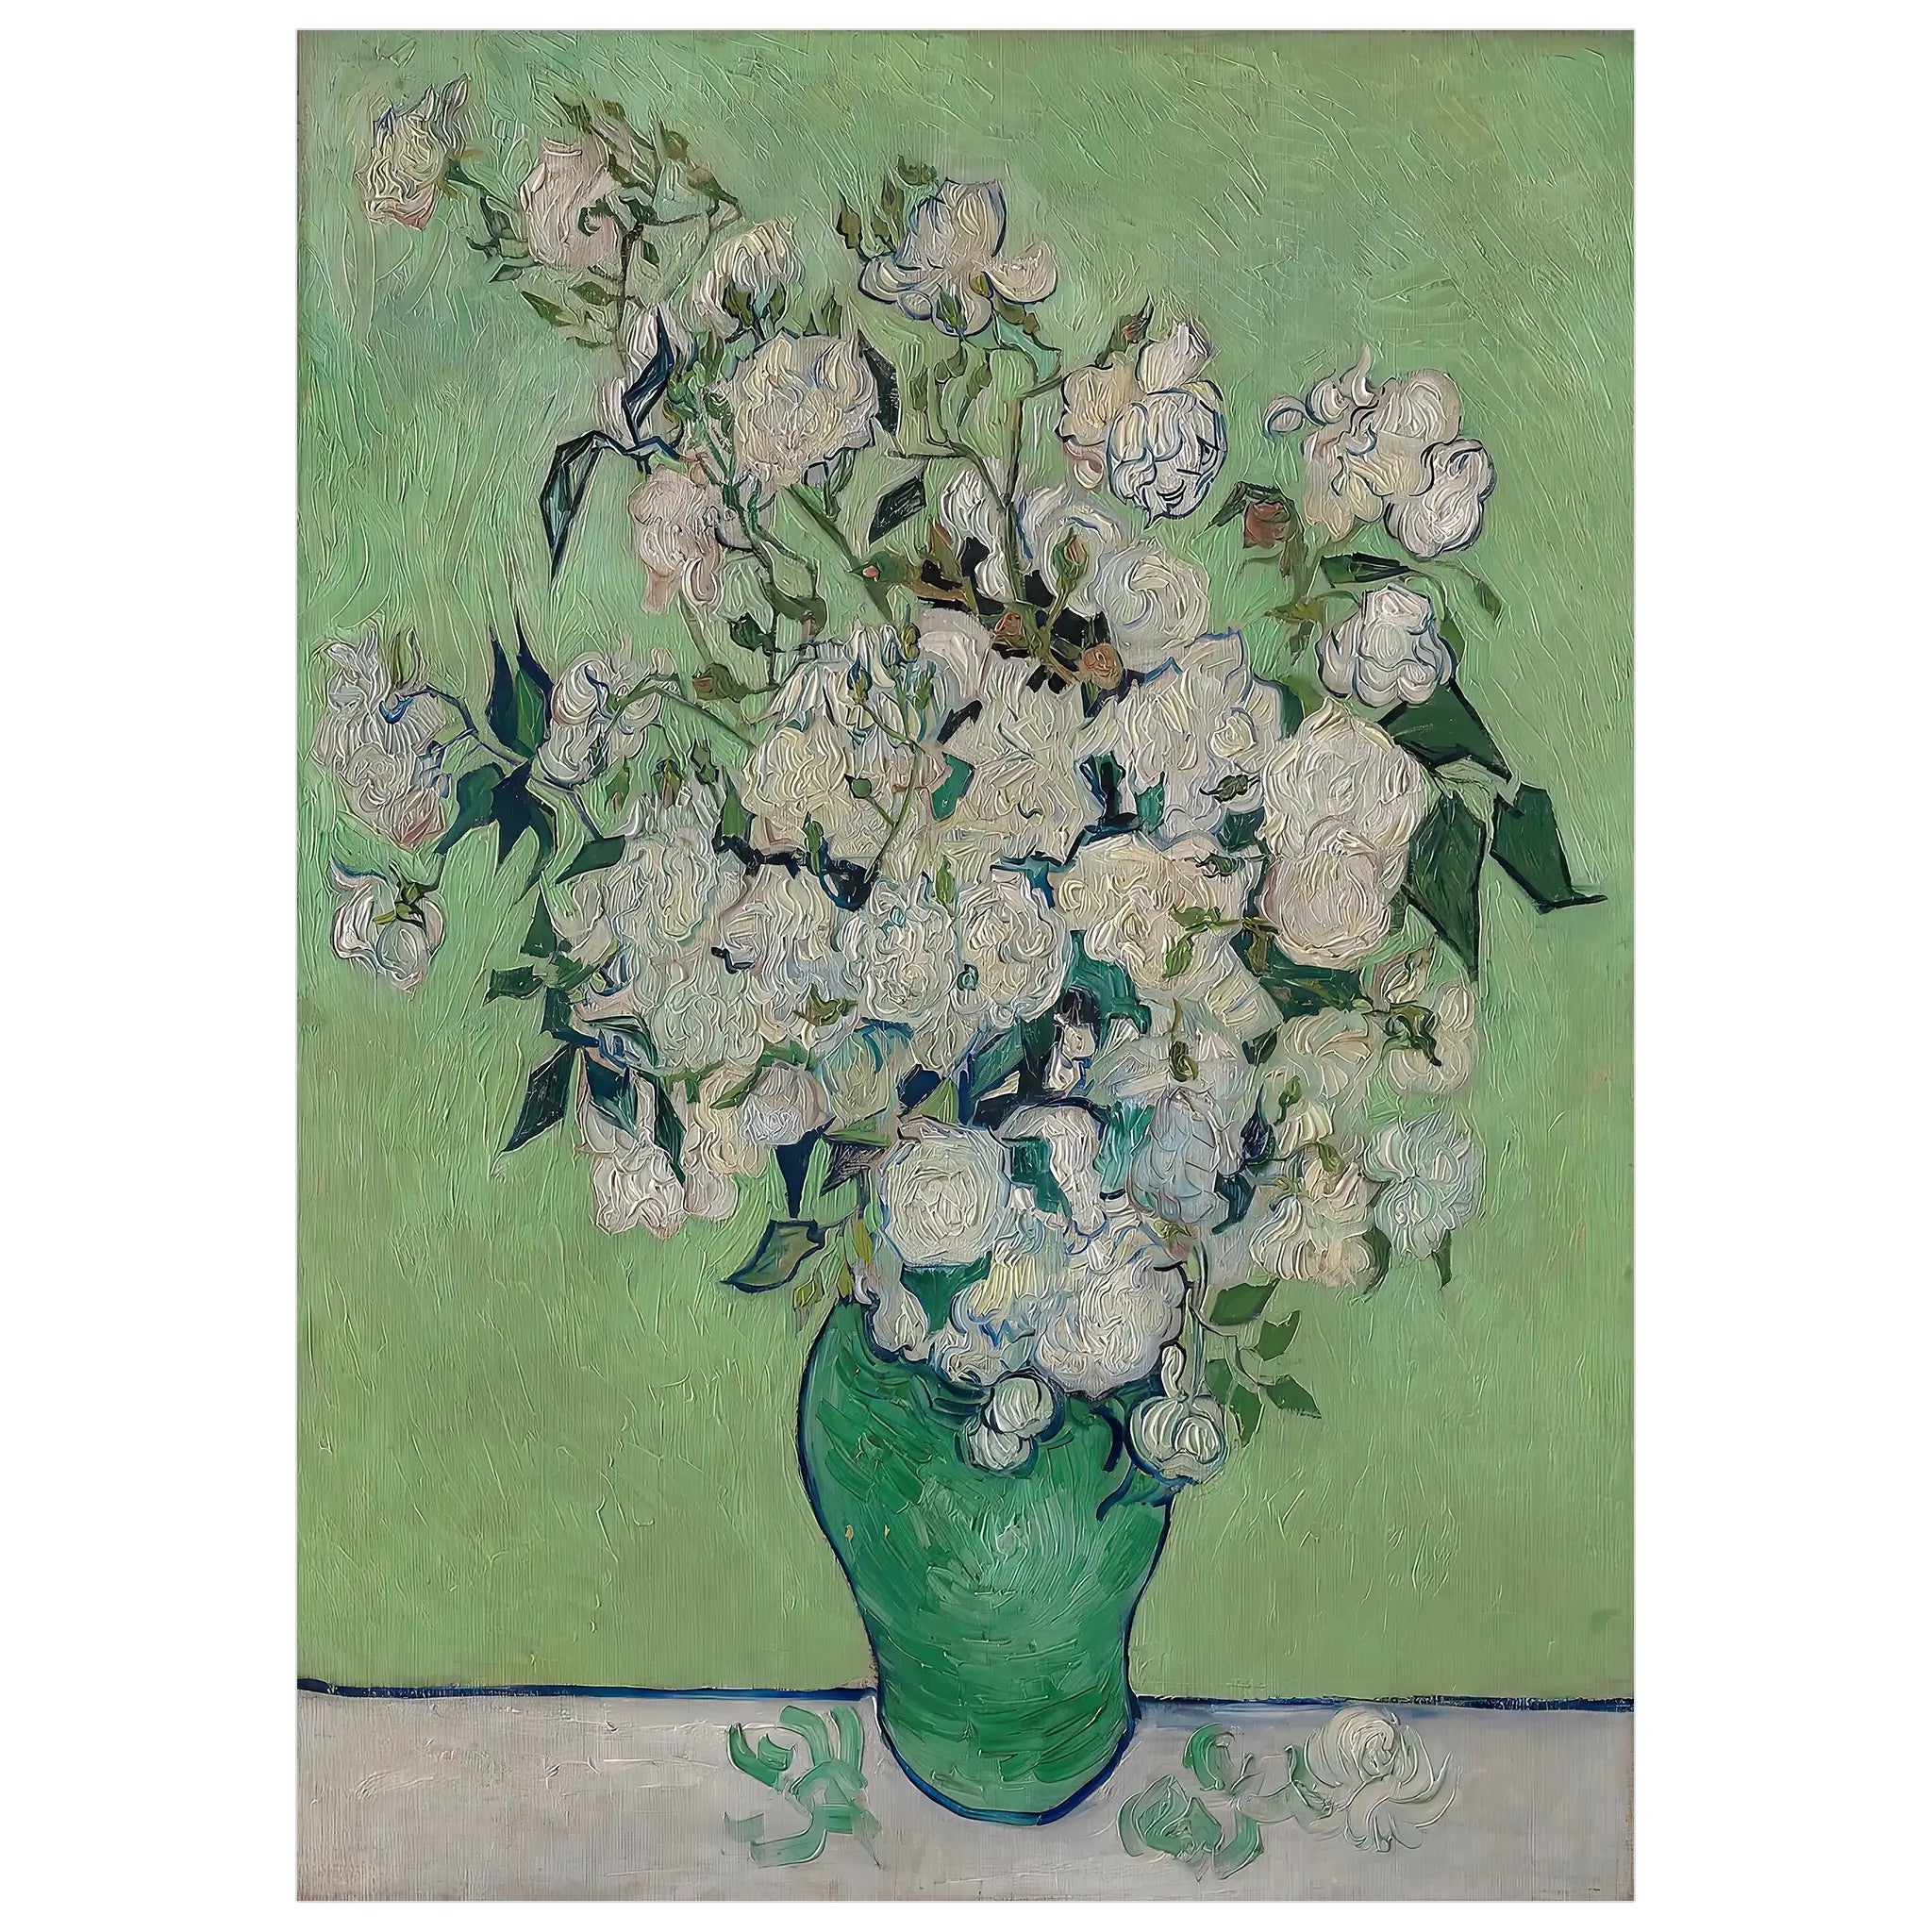 Vincent van - Gogh Roses